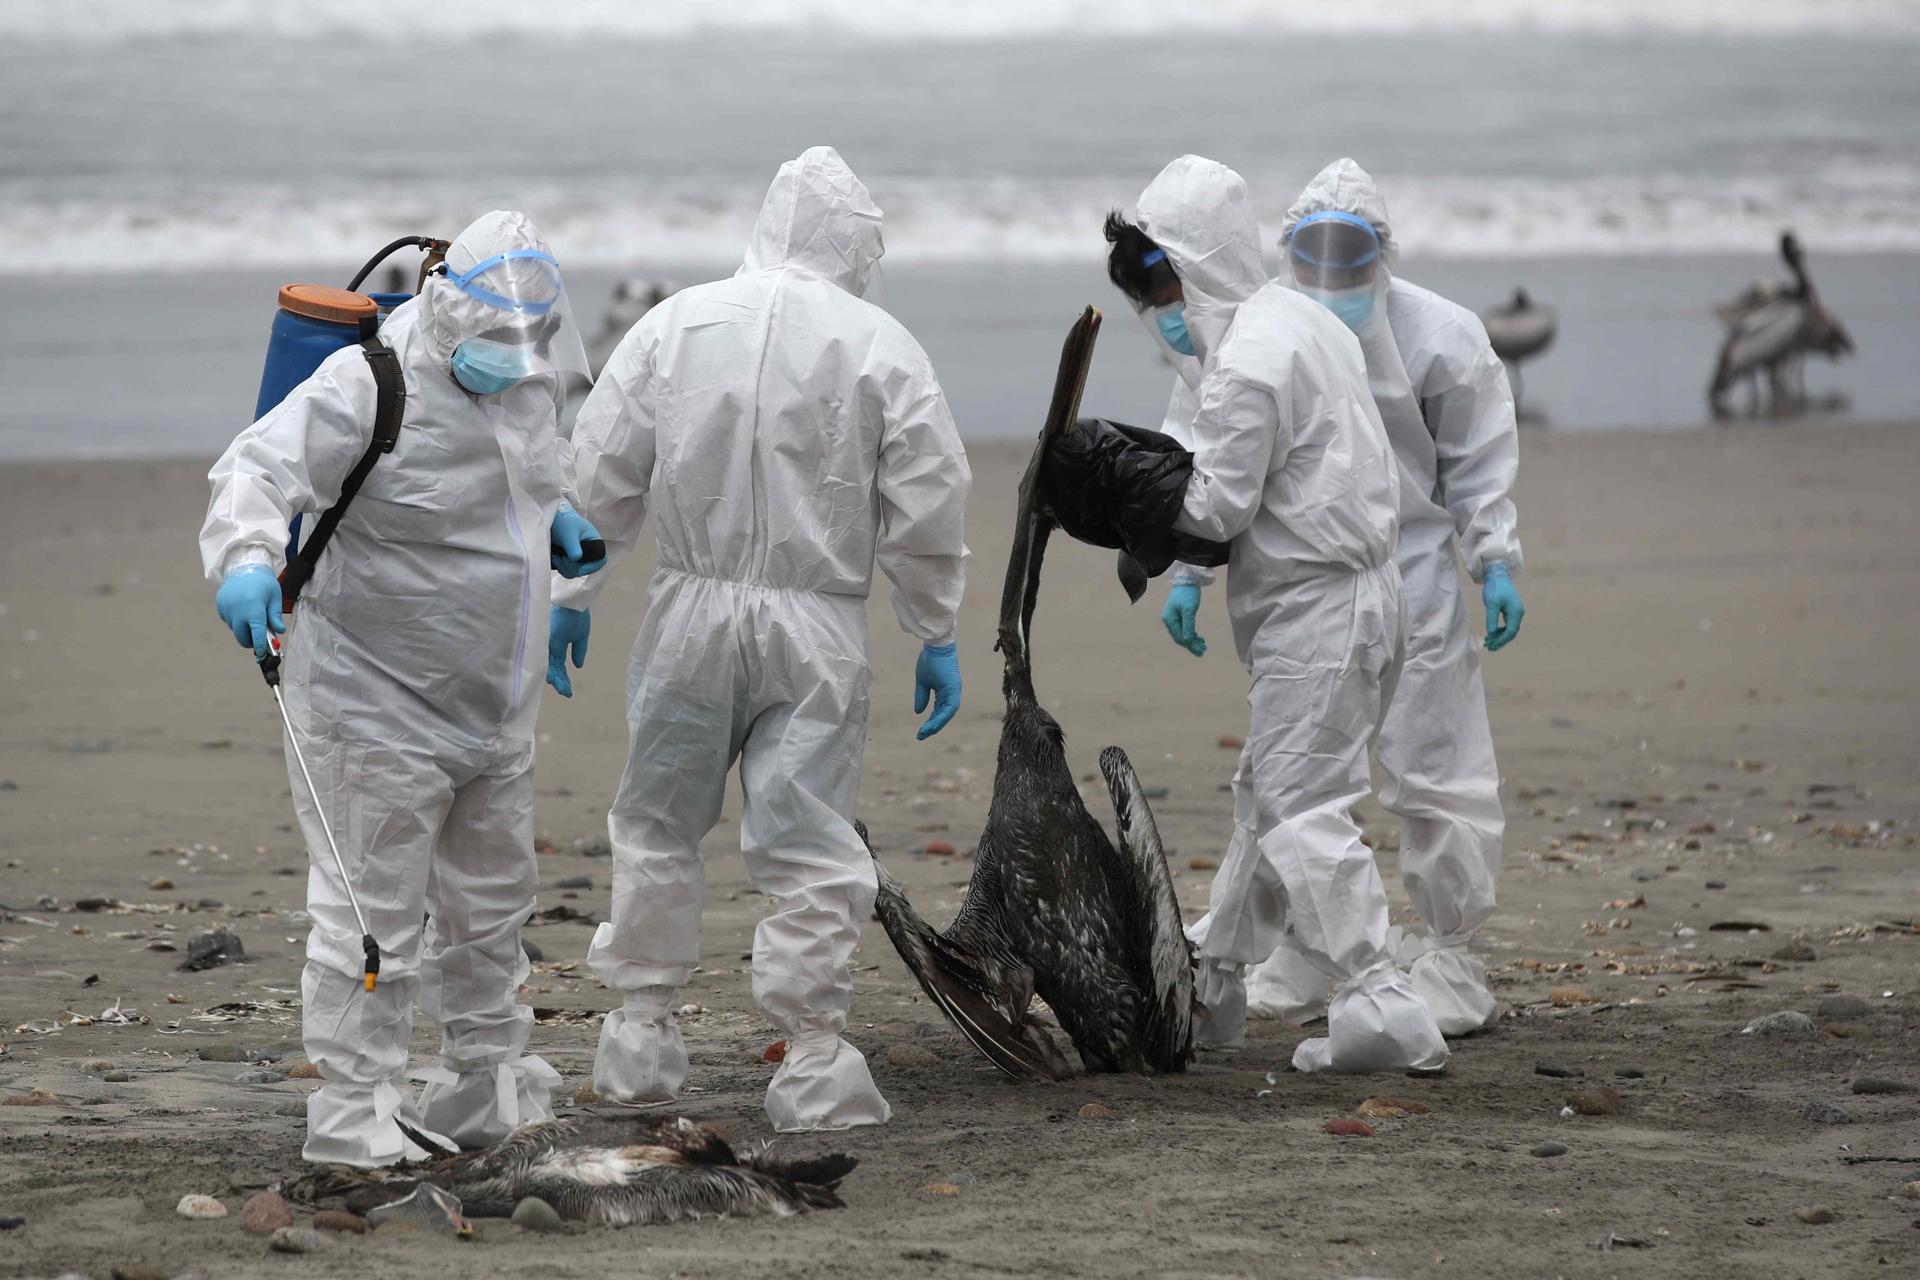 En Perú, el brote de gripe aviar ha causado la muerte de diferentes especies de aves silvestres y de corral. También de más de 600 lobos marinos sudamericanos